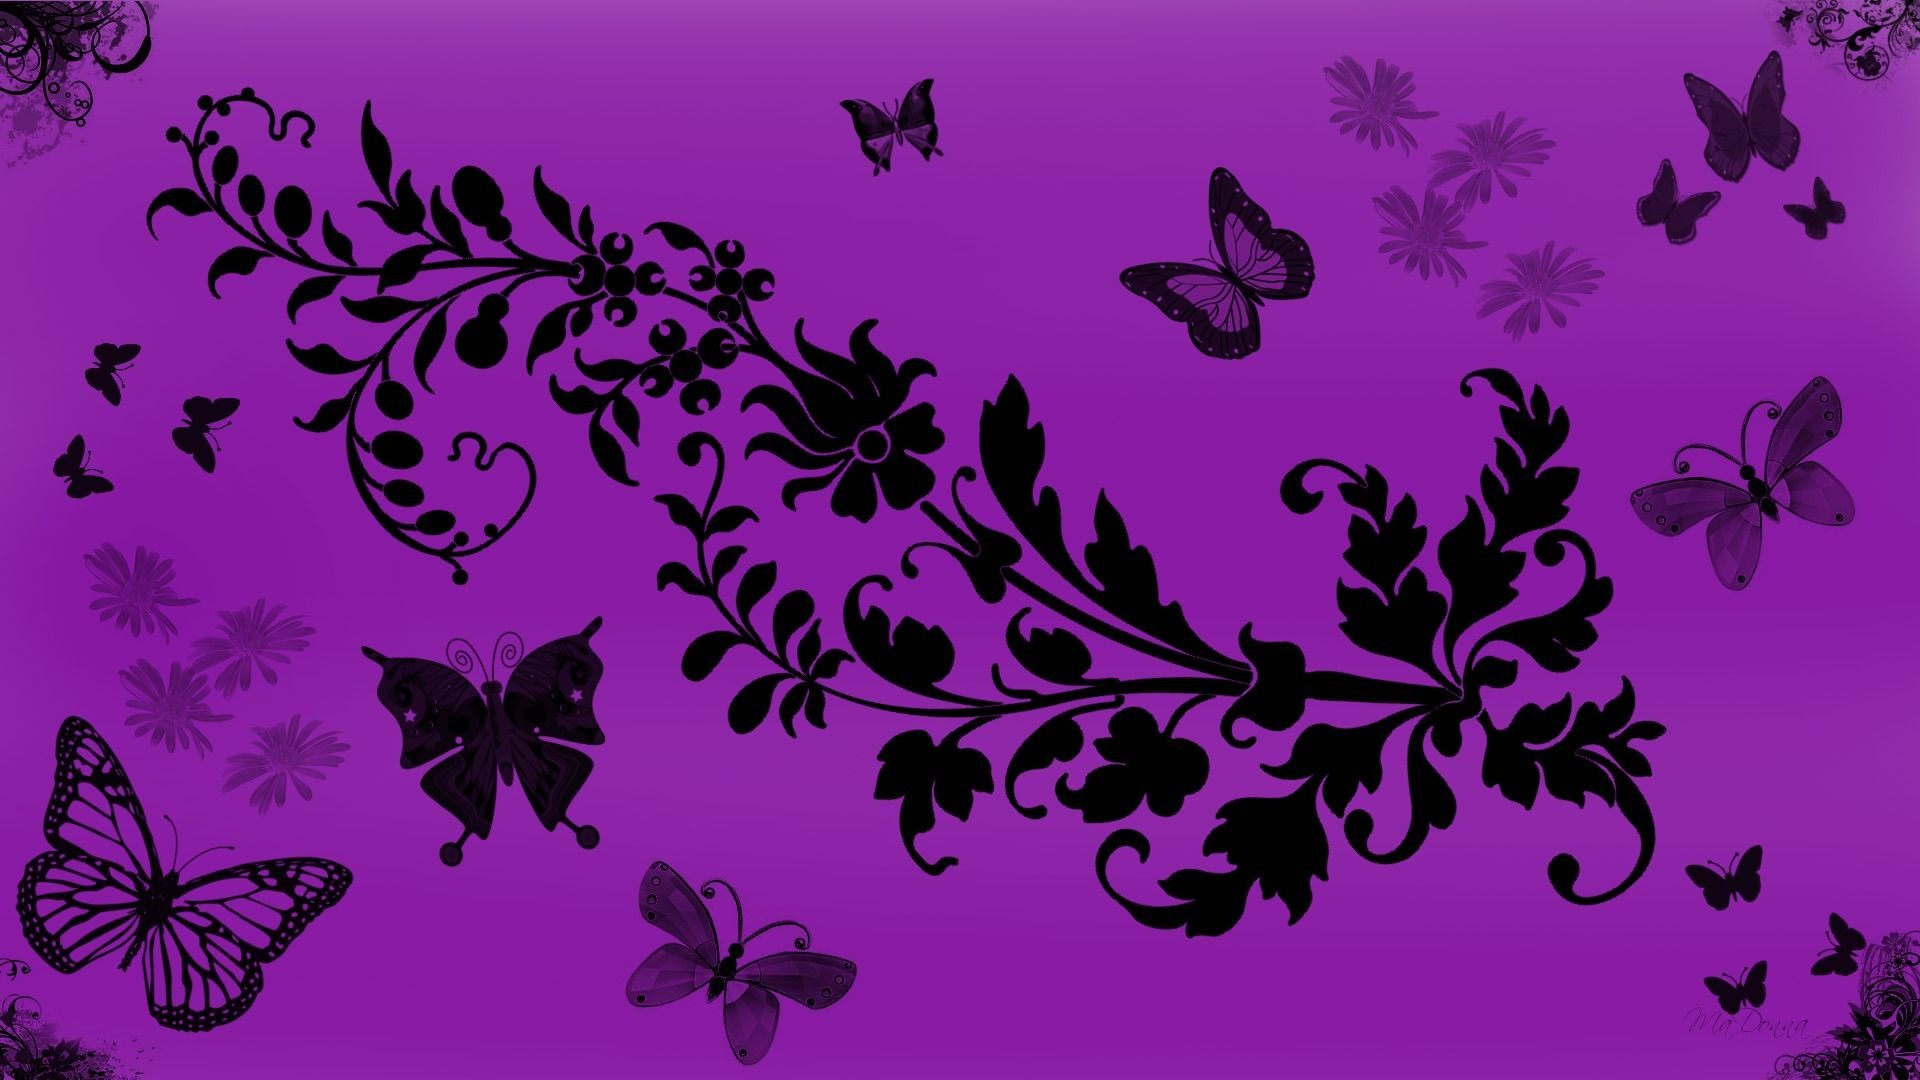 1920x1080 ... Purple Butterfly Desktop Background Wallpaper. Download